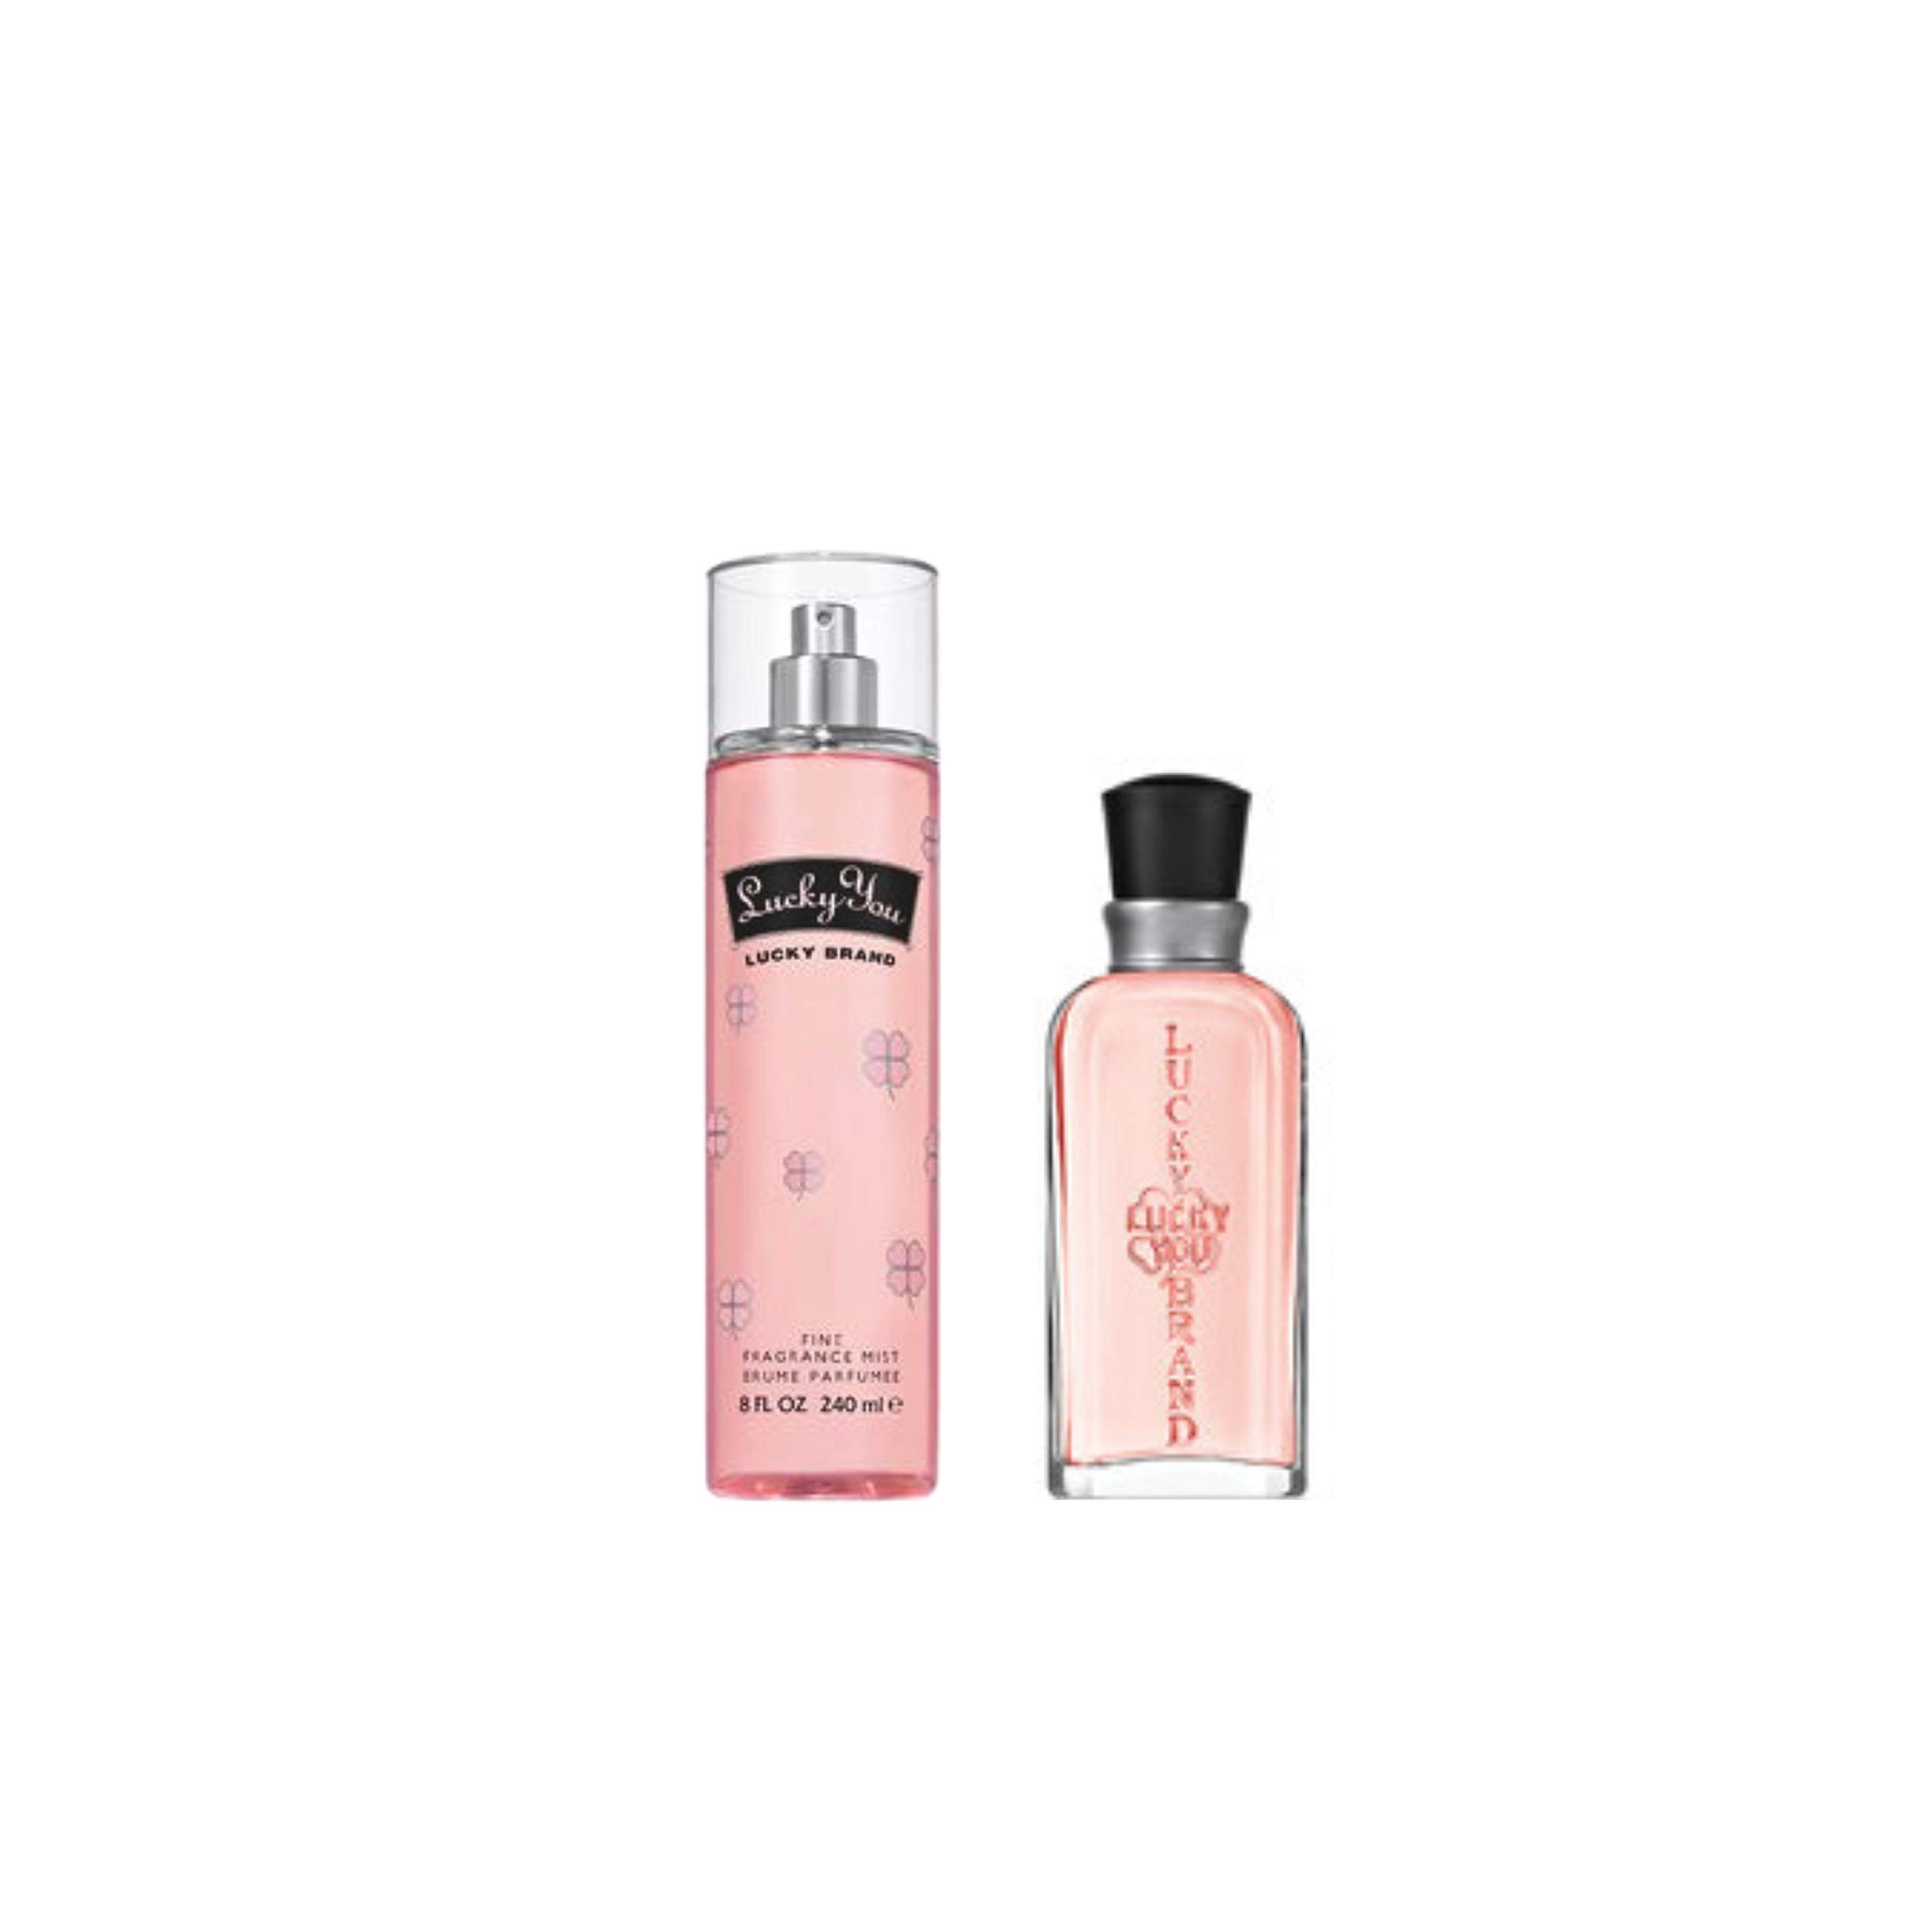 Women's Perfume Fragrance Set by Lucky You, Fragrance Mist & Eau de Toilette, Fresh Flower Citrus Scent, 2 Piece Set